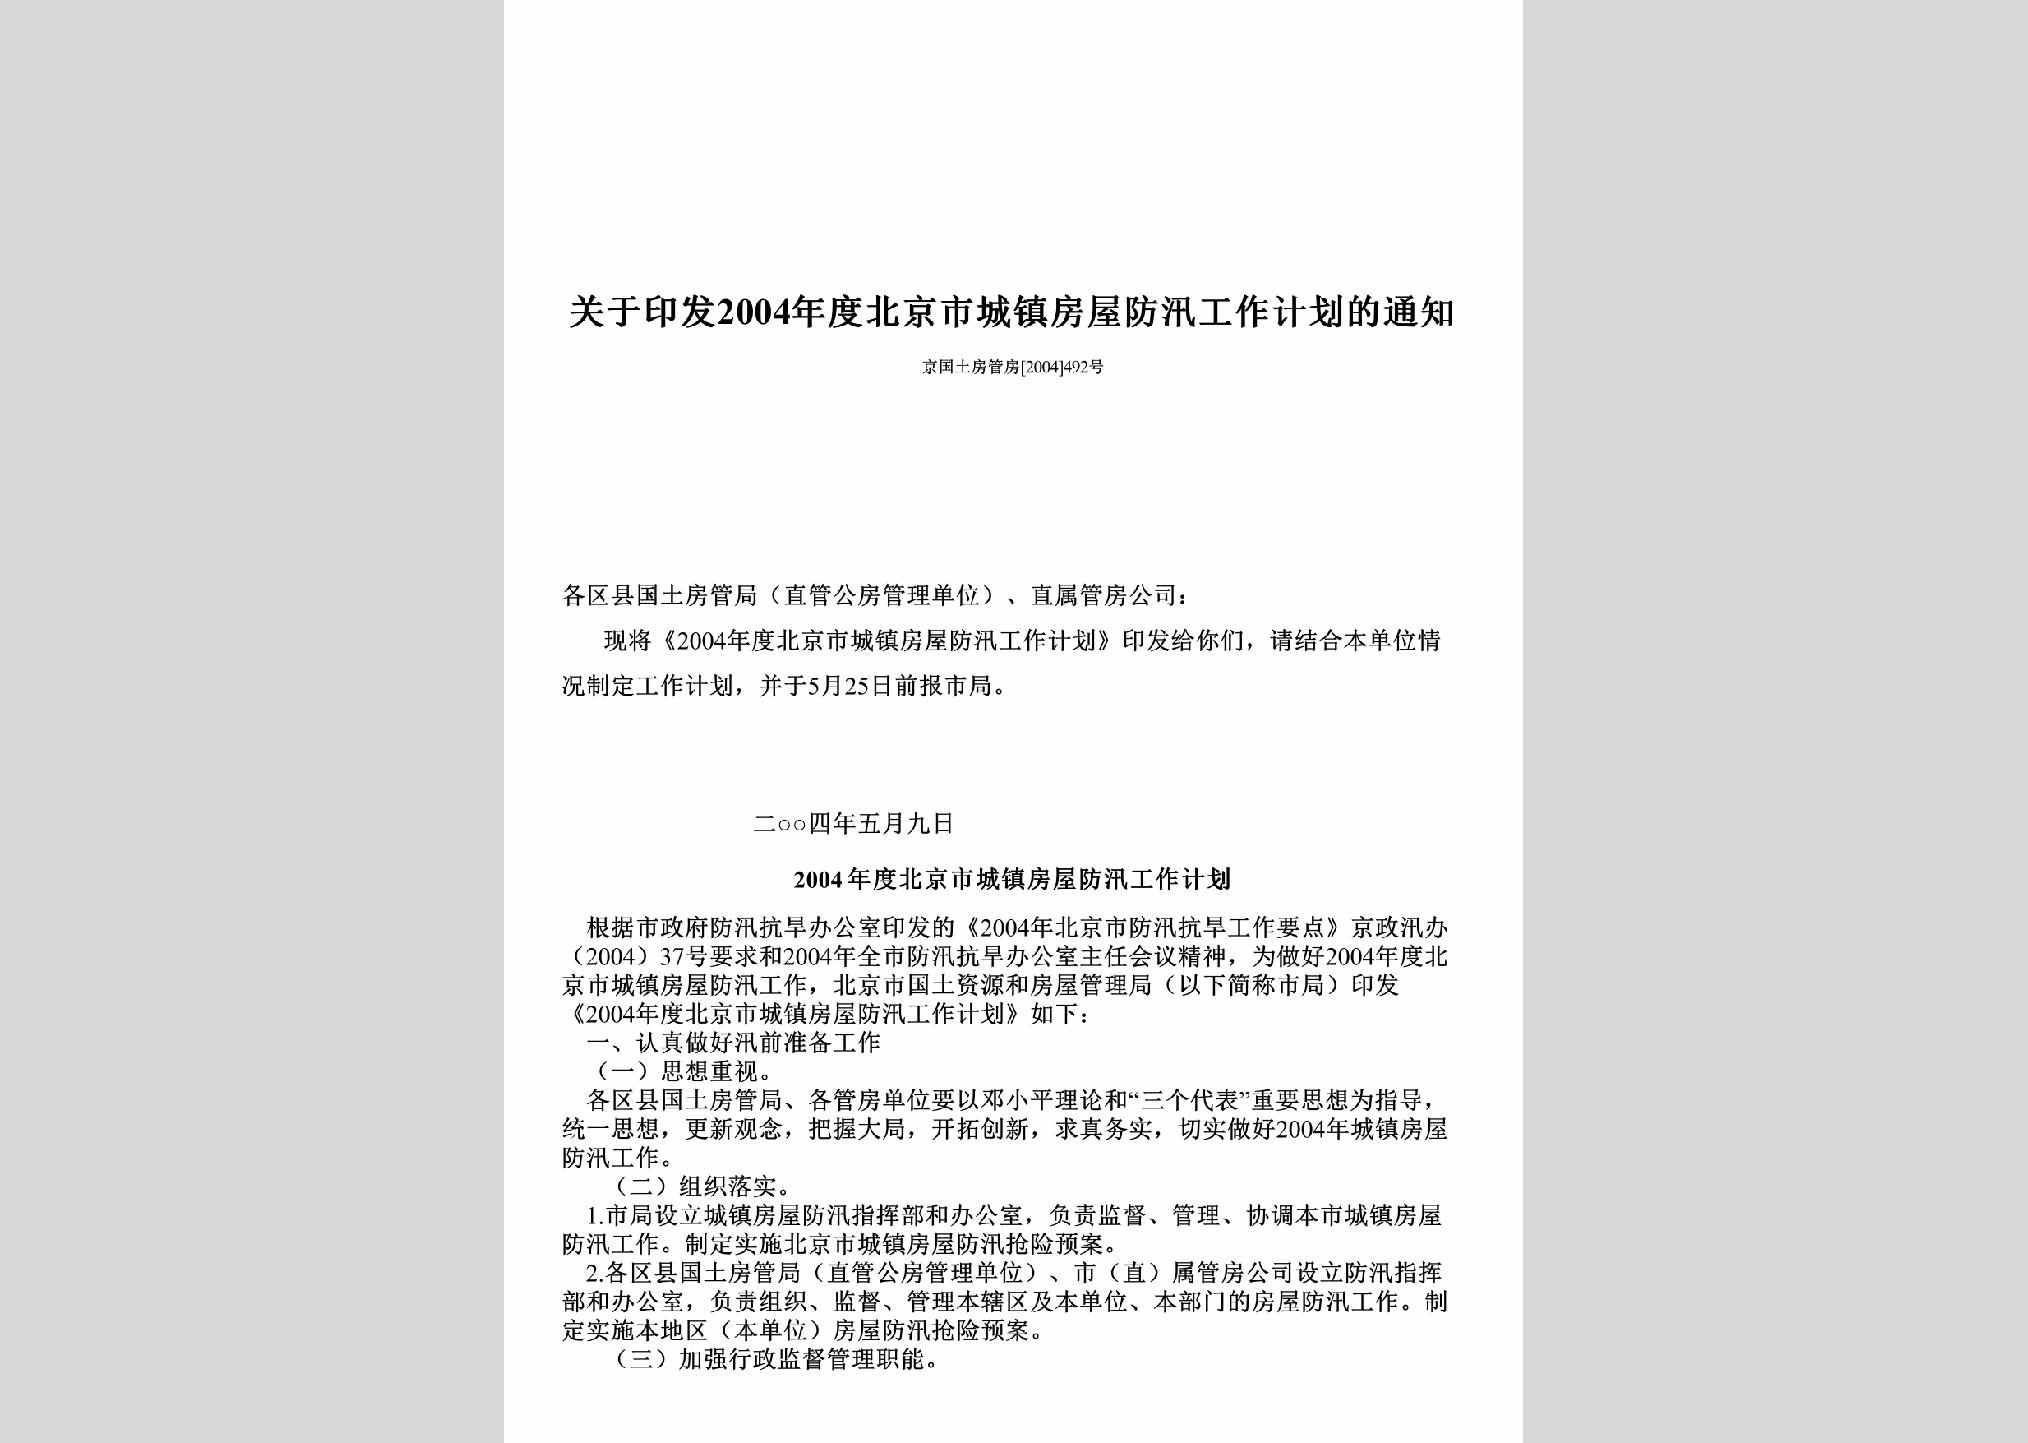 京国土房管房[2004]492号：关于印发2004年度北京市城镇房屋防汛工作计划的通知